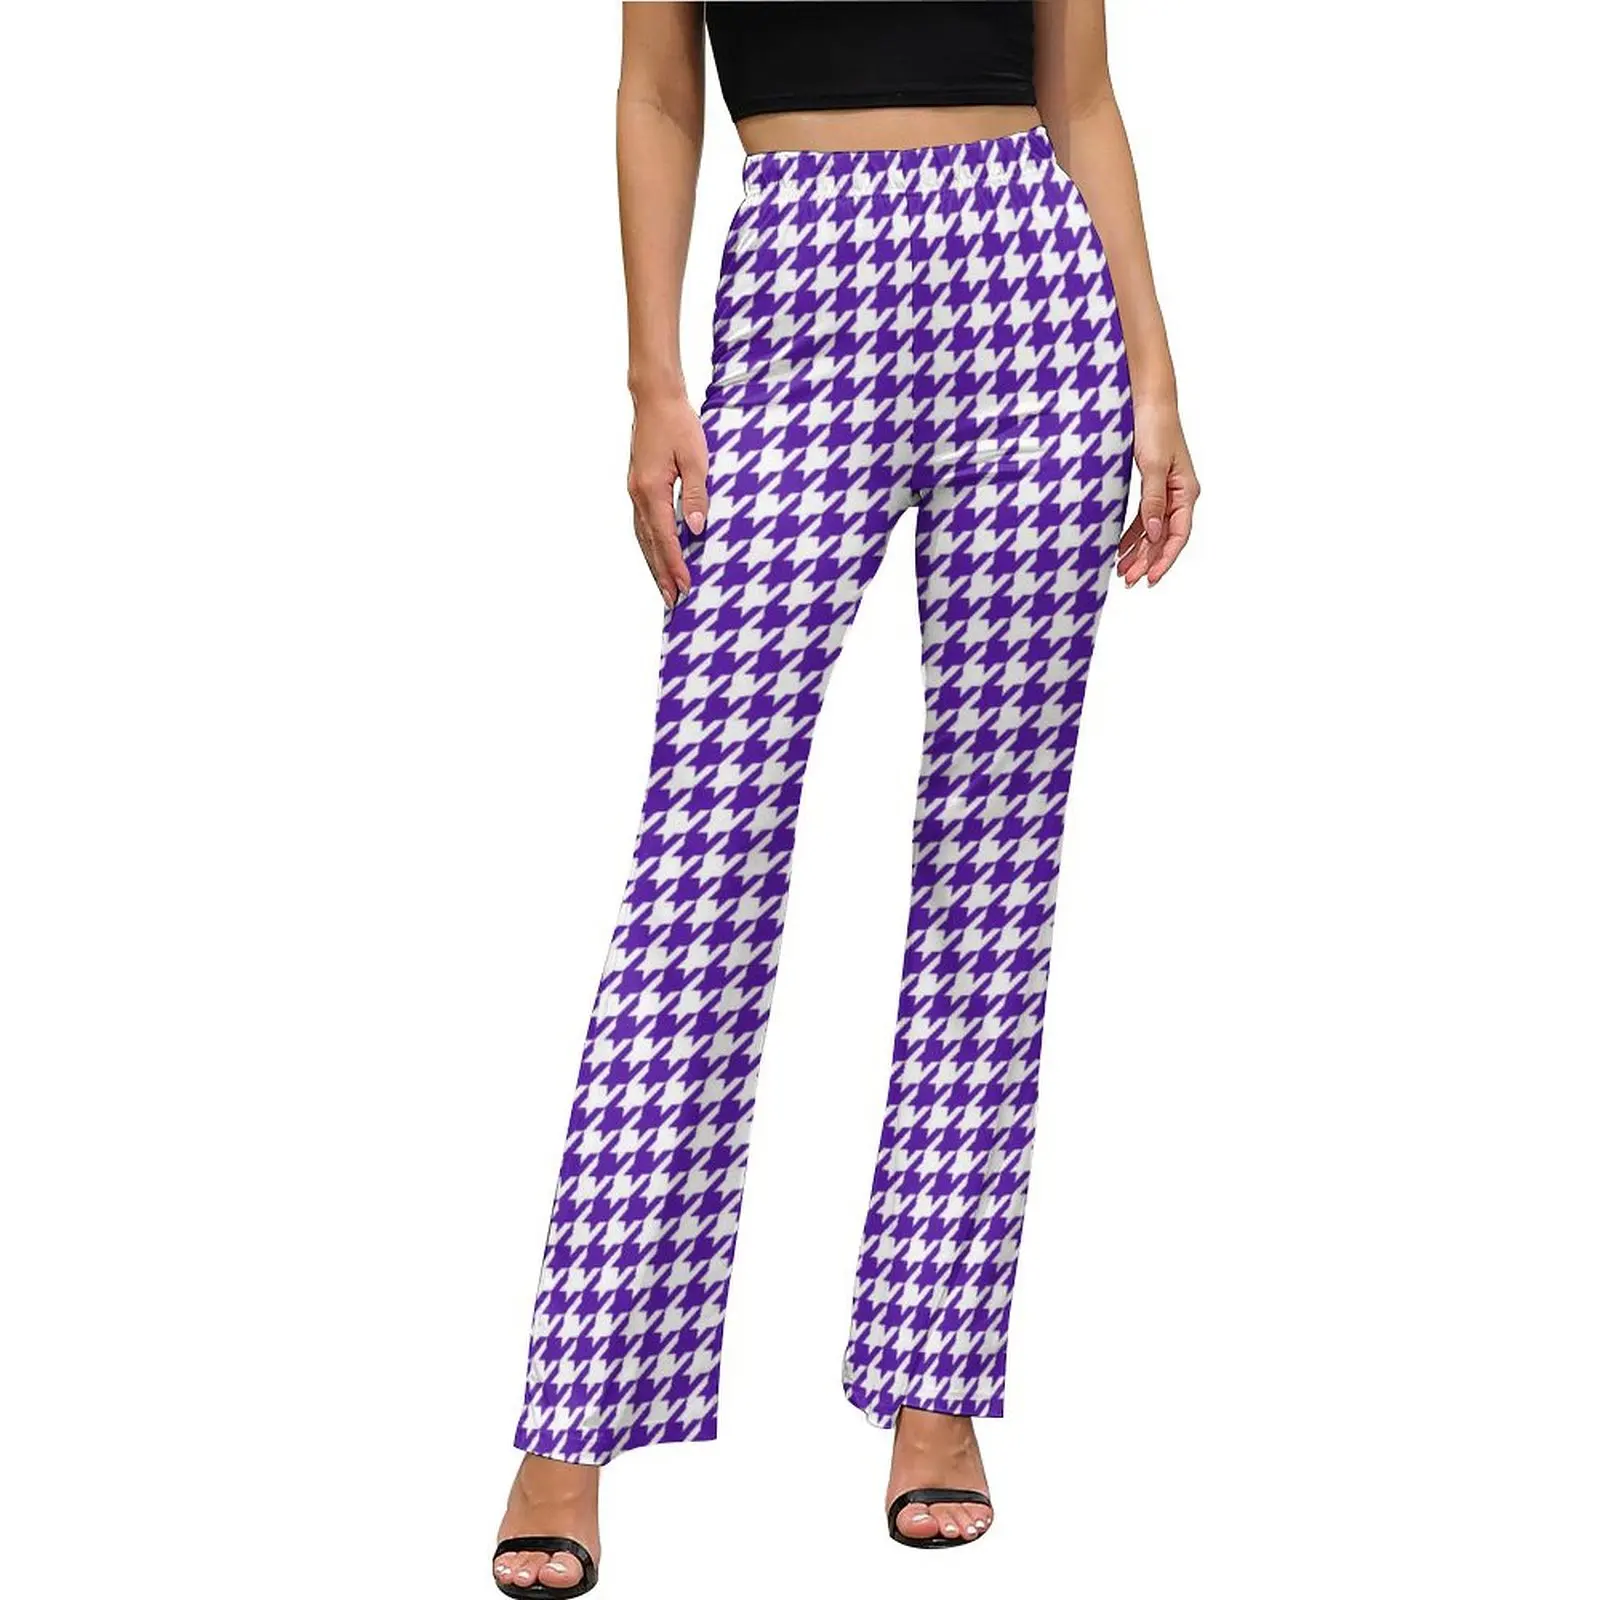 

Брюки с рисунком «гусиные лапки», белые и фиолетовые повседневные расклешенные брюки, летние женские облегающие брюки в уличном стиле на заказ